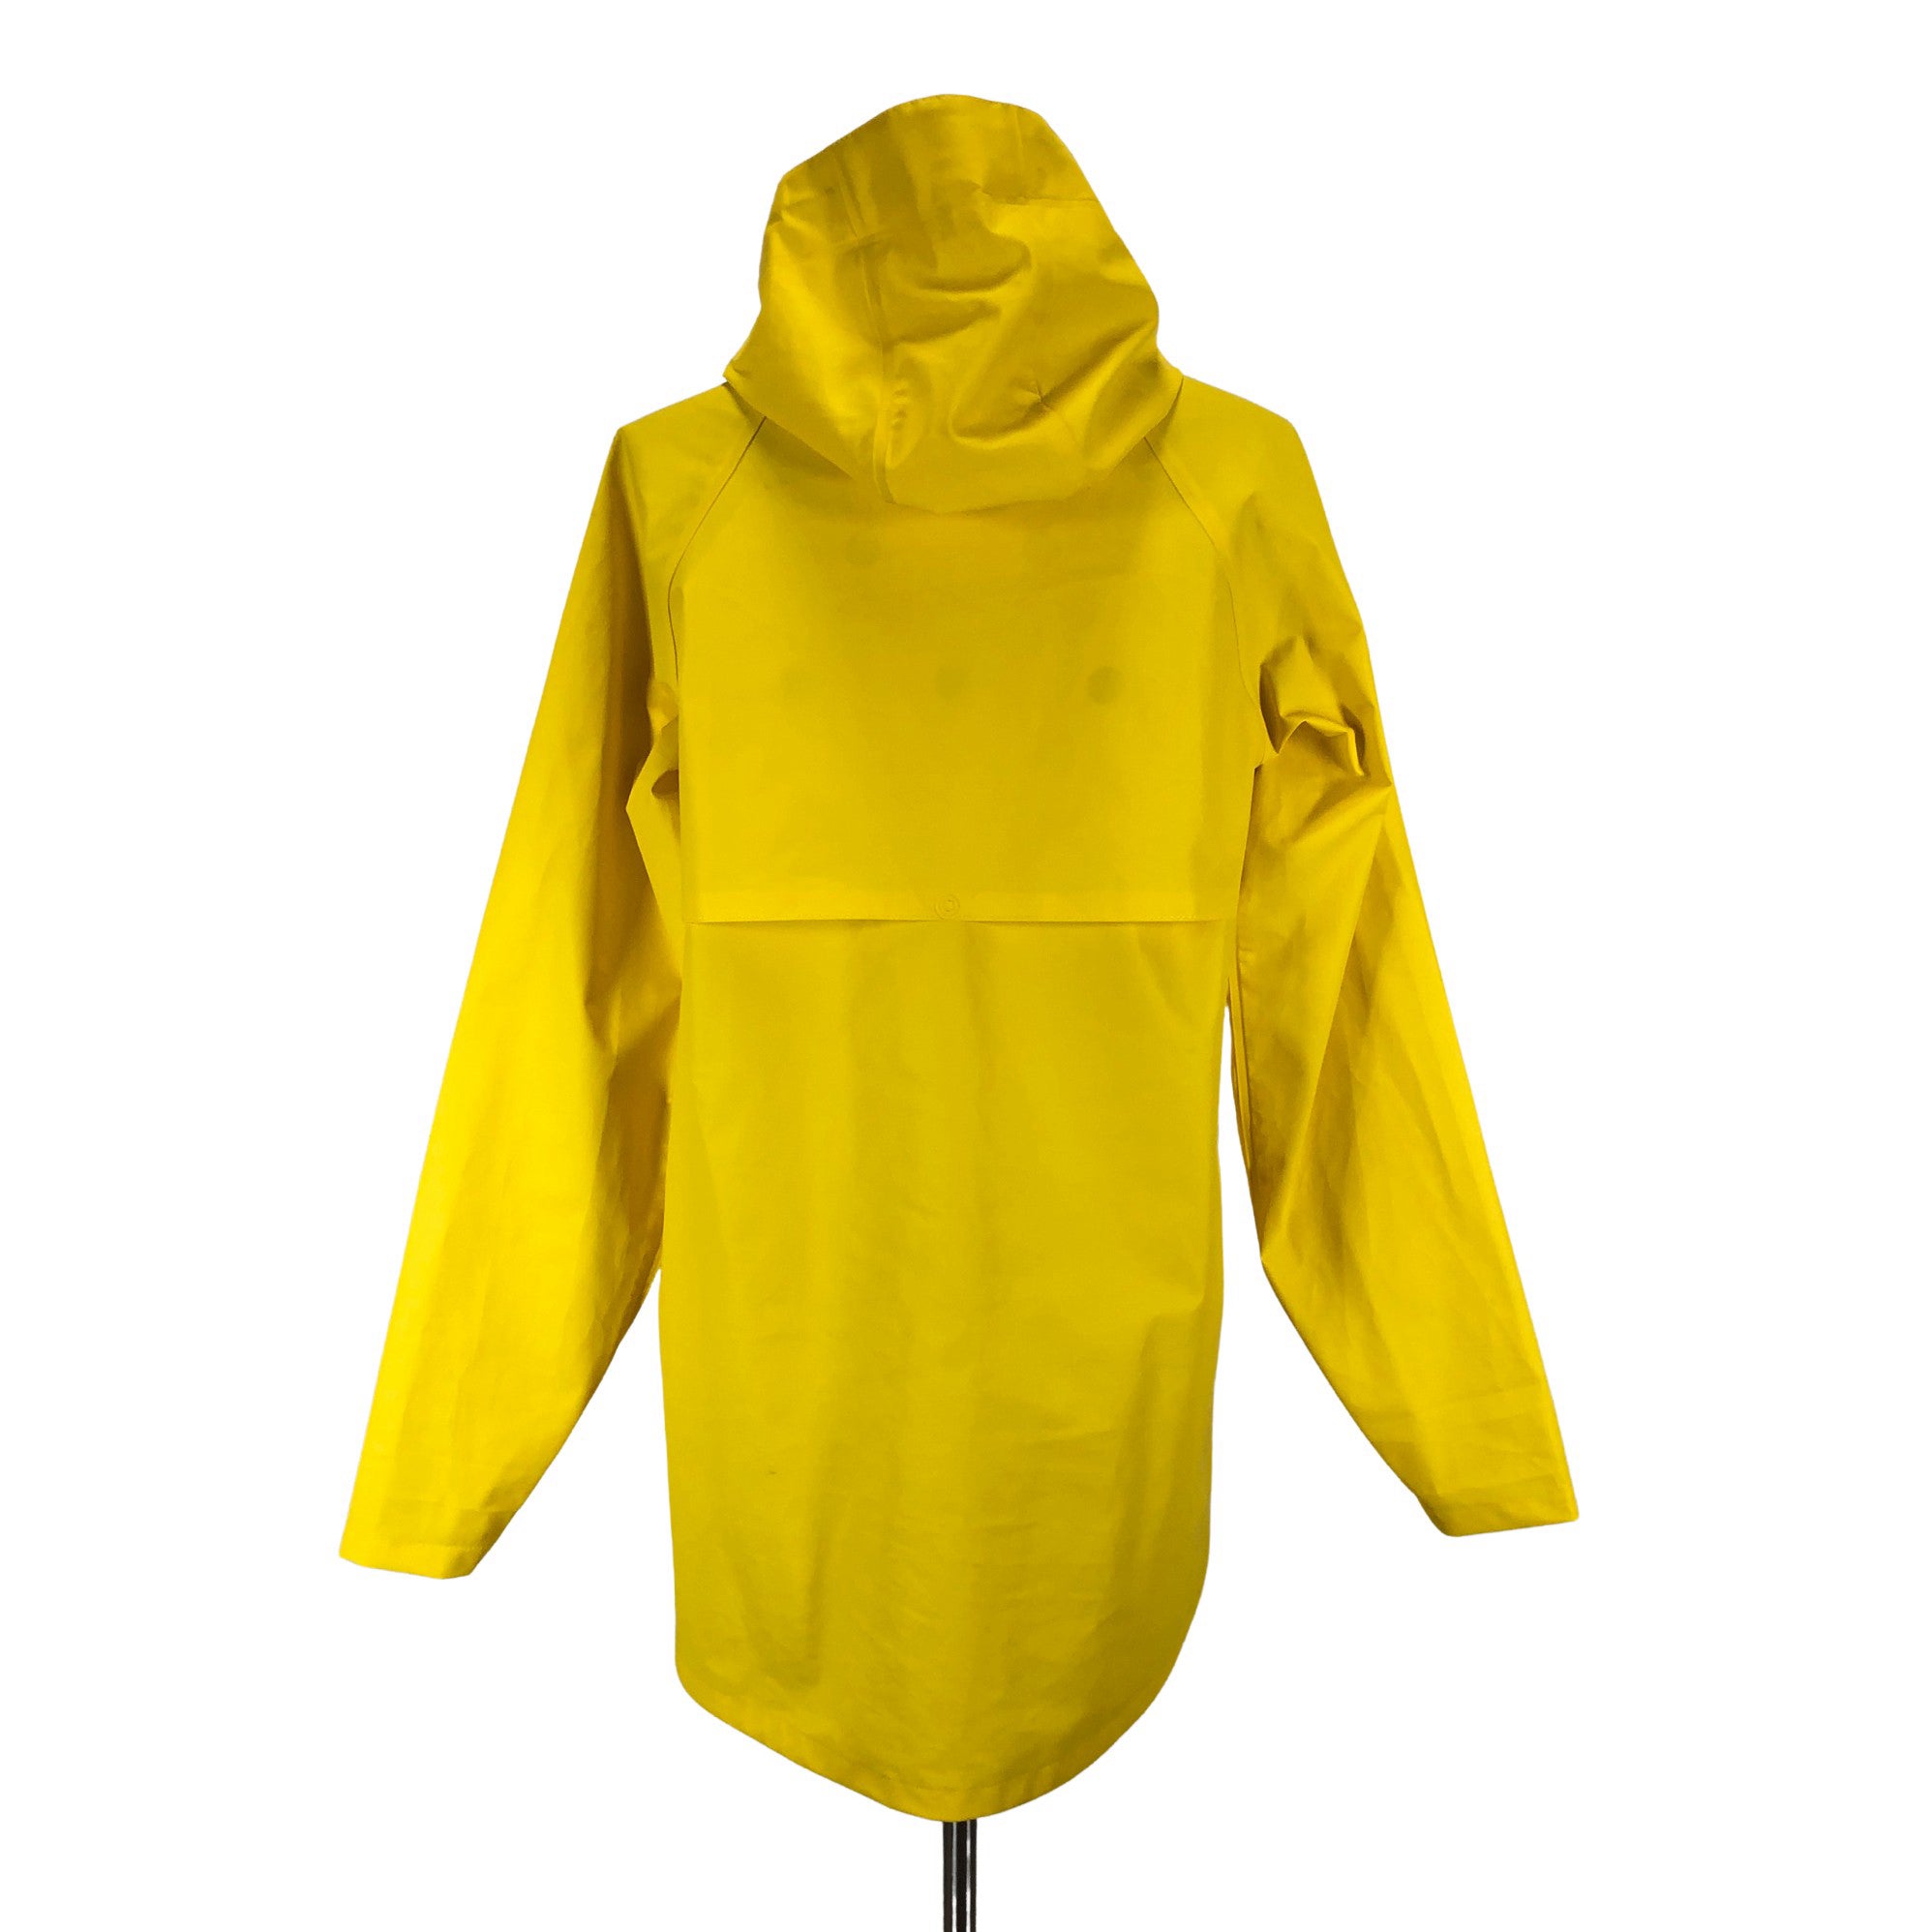 Women's Didriksons Rain jacket, size 40 (Yellow) | Emmy